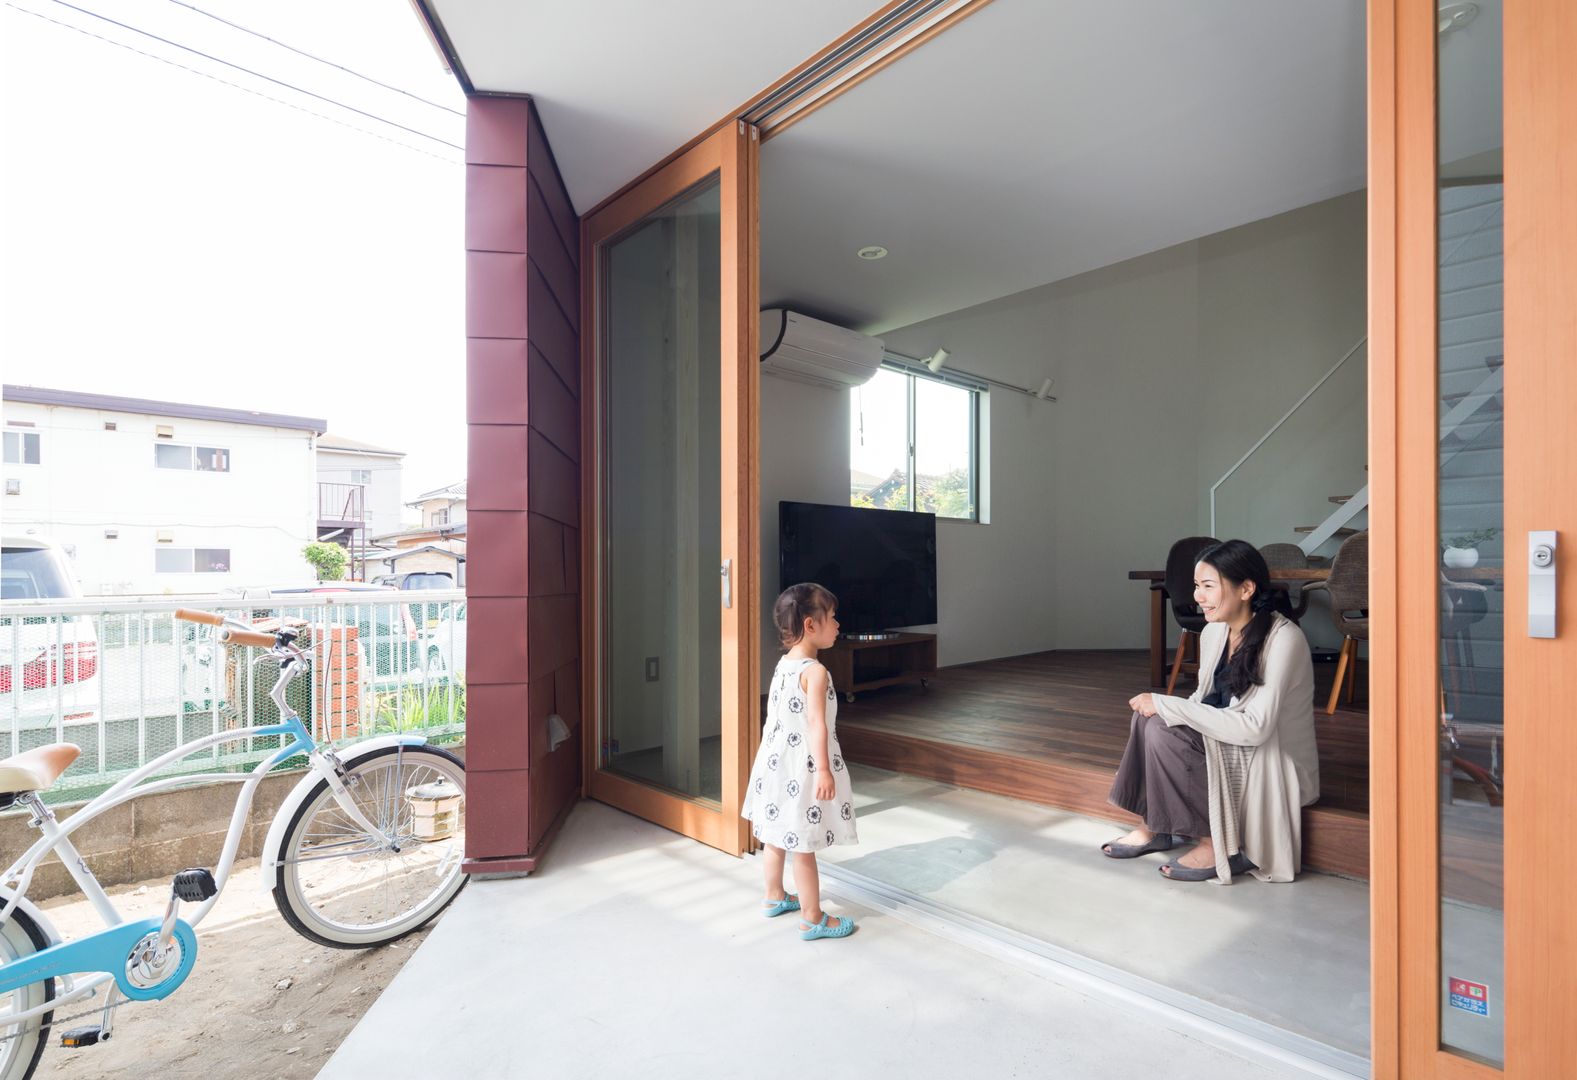 浜竹の家 House in Hamatake, 本間義章建築設計事務所 本間義章建築設計事務所 Modern houses